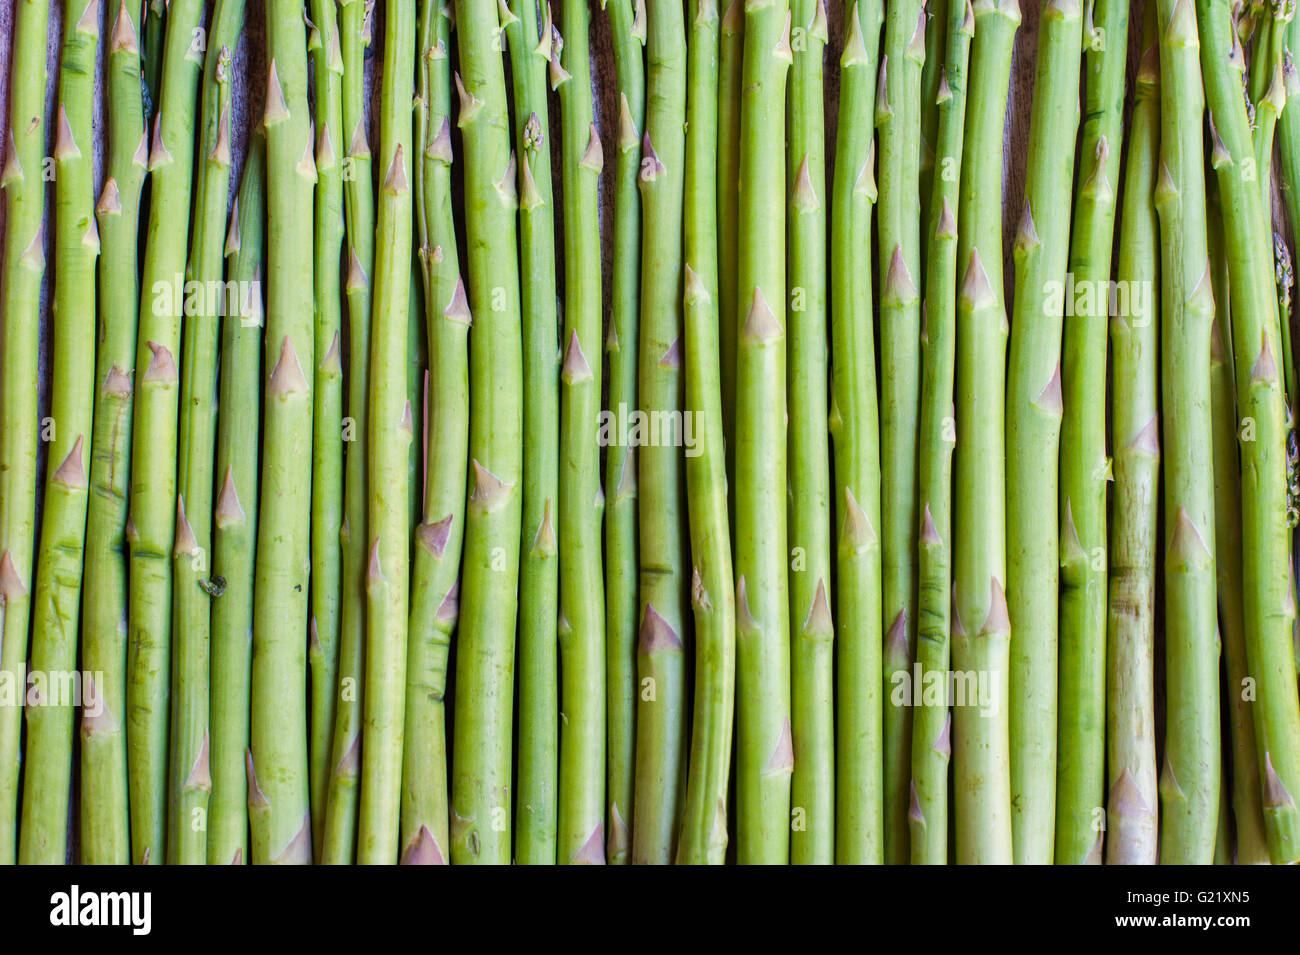 Essen Muster Hintergrund des rohen Grünspargel ergeben sich in geordneten vertikalen Reihe Stockfoto